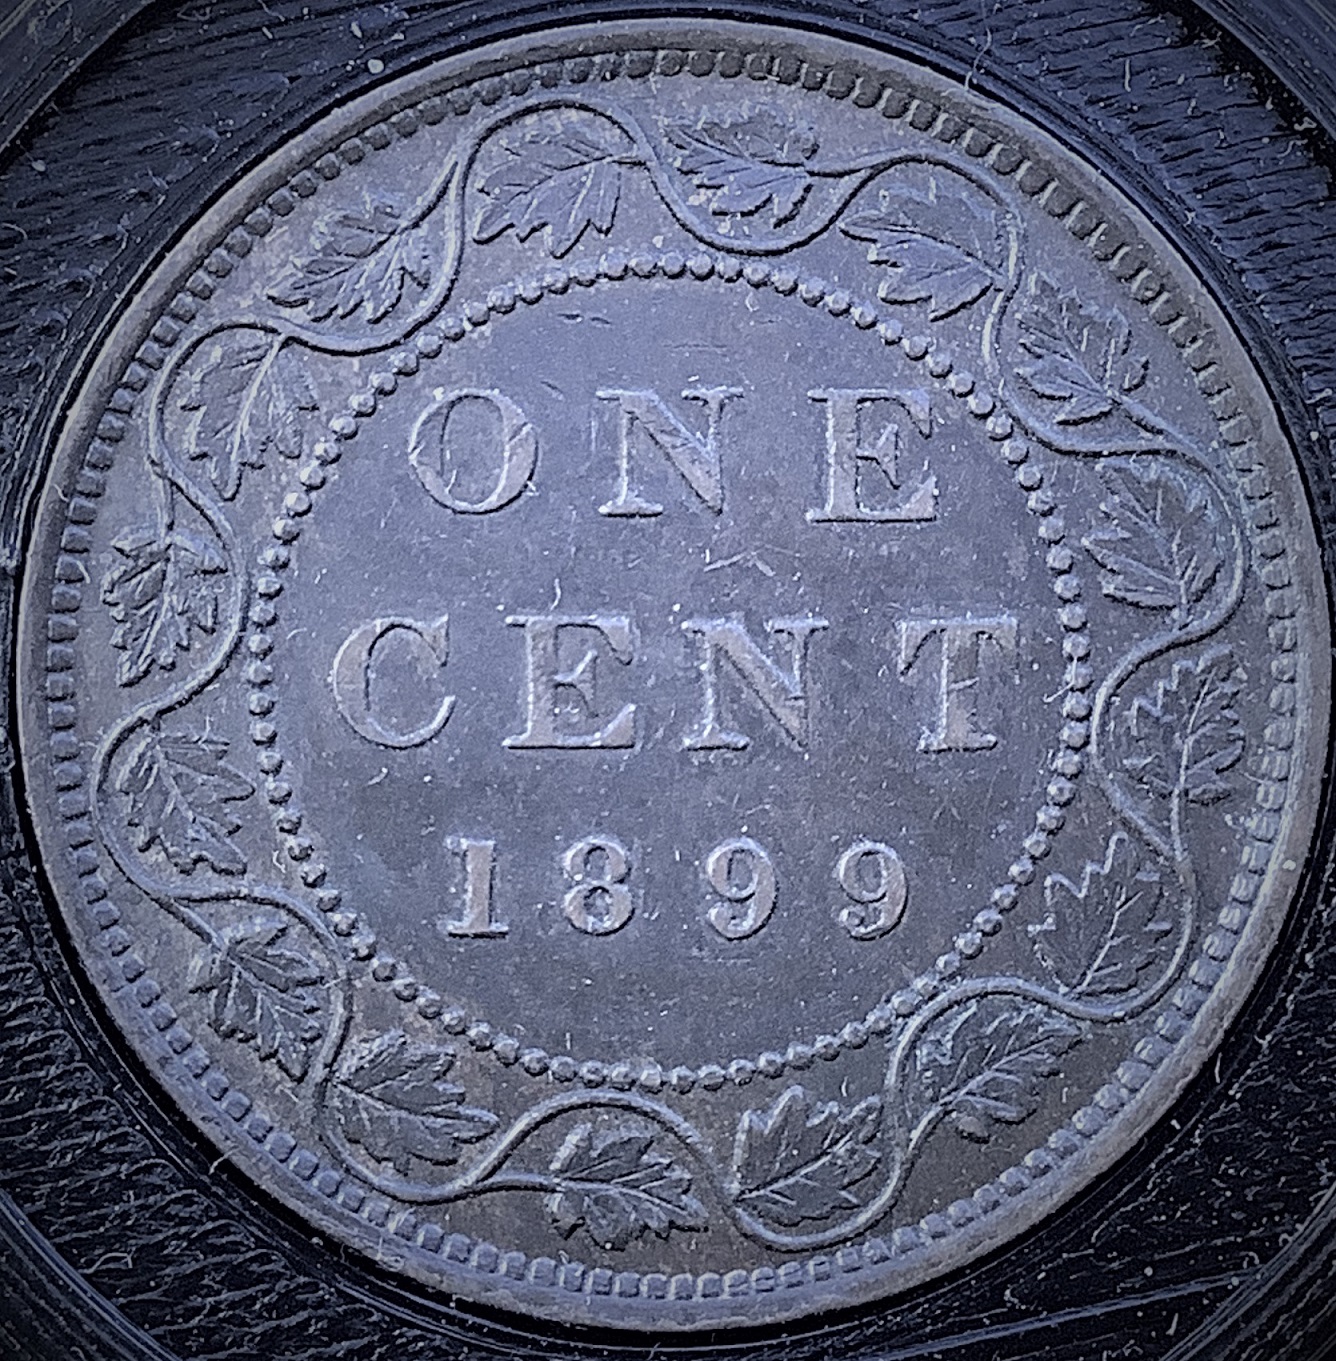 1 cent 1899 revers EF-45.jpg